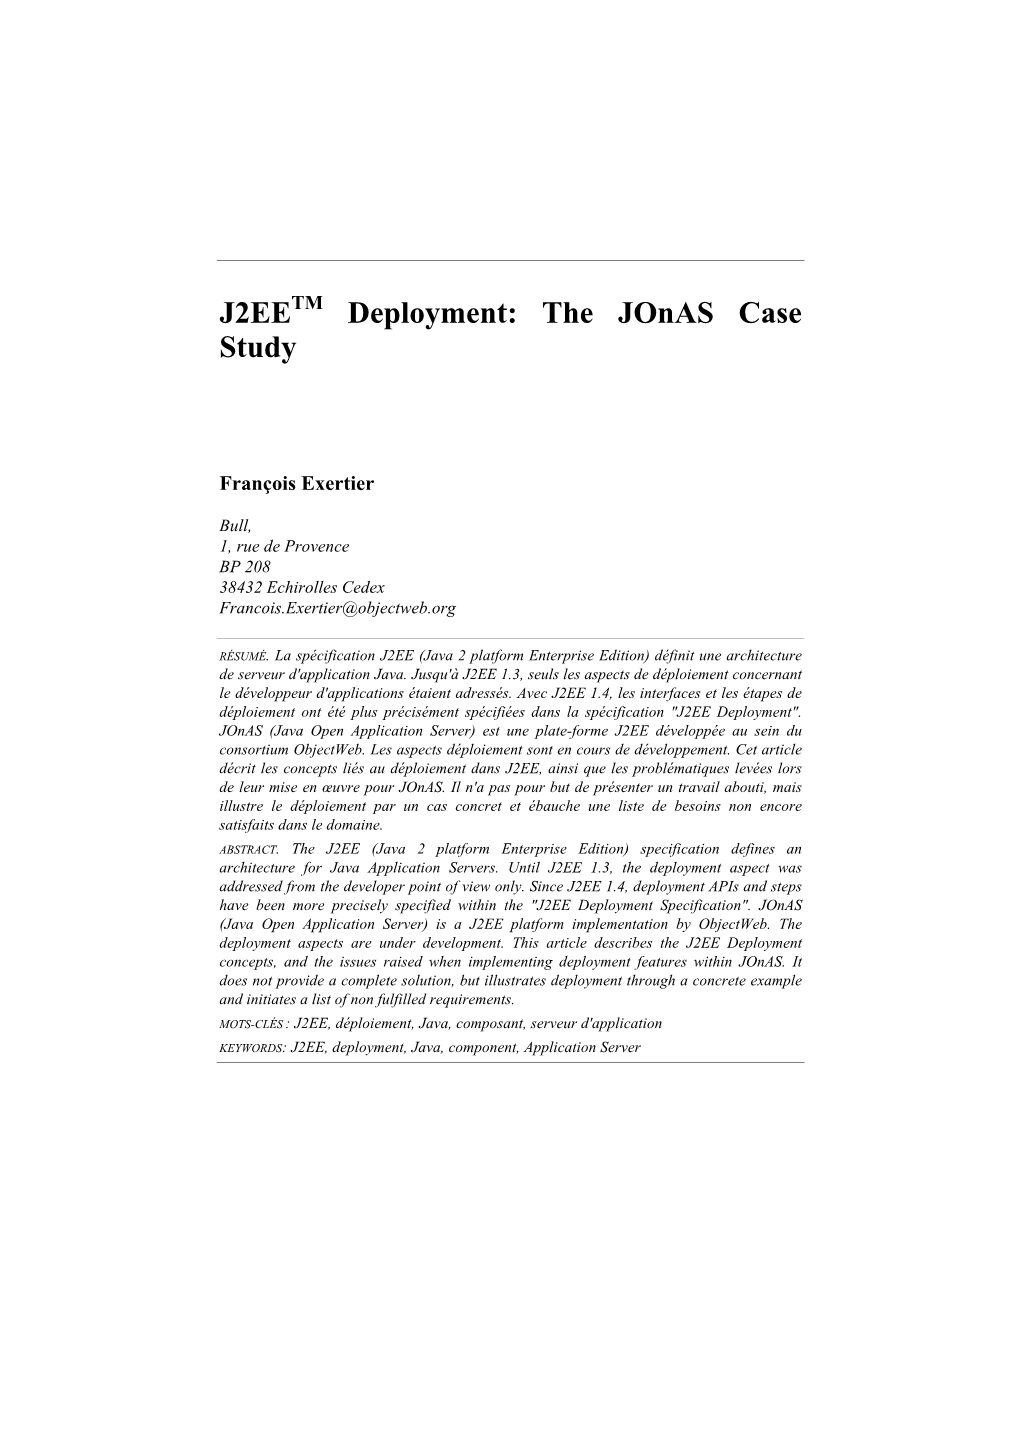 J2EETM Deployment: the Jonas Case Study